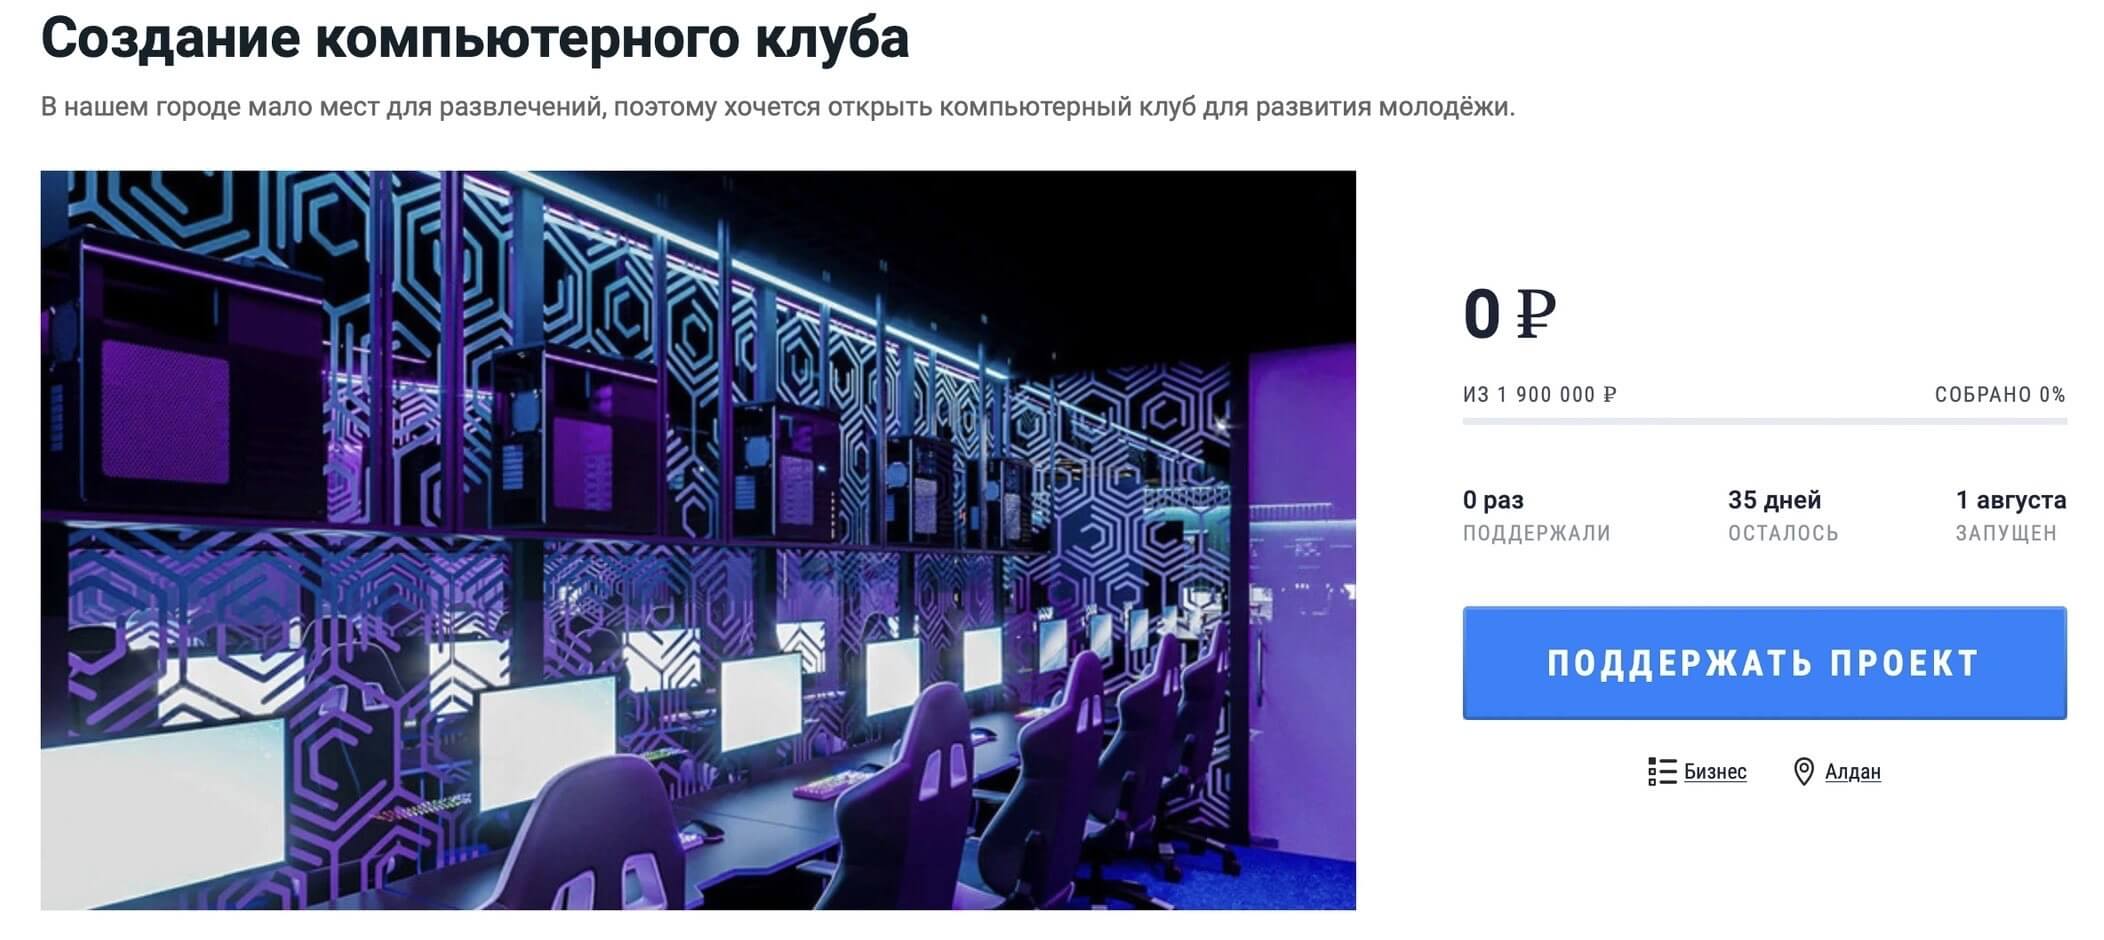 проект на Planeta.ru